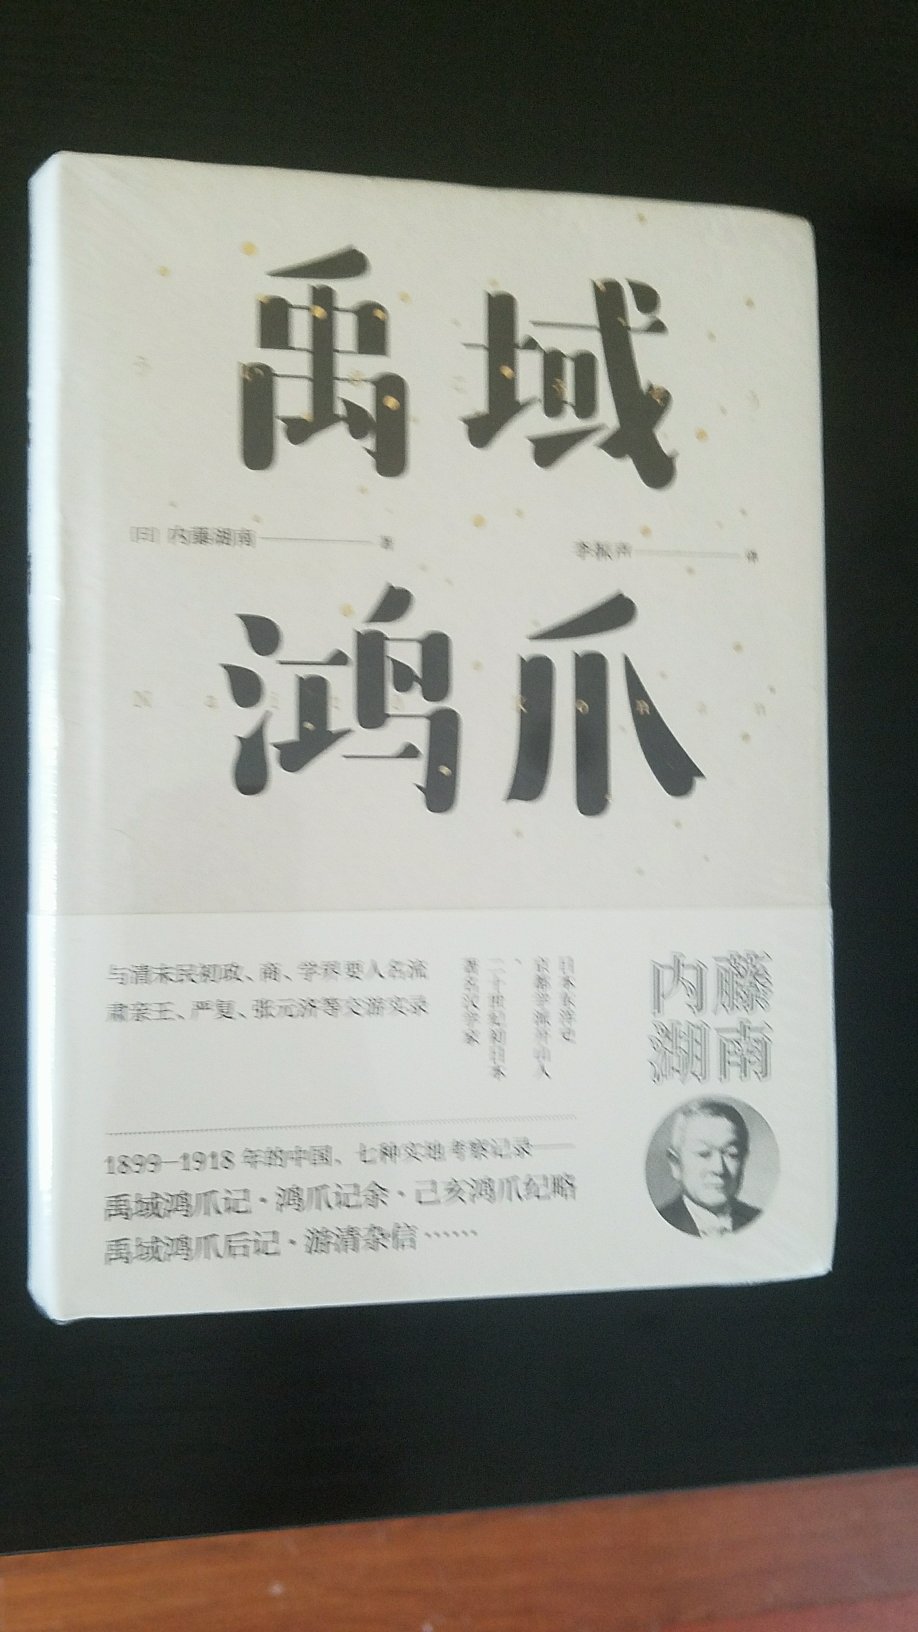 著名日本史学家内藤湖南在中国的游记，记录了中国的风情与当时他与中国文化名人的交游。他以学问为底，间有发覆考证的癖好，高见迭出，十分精彩